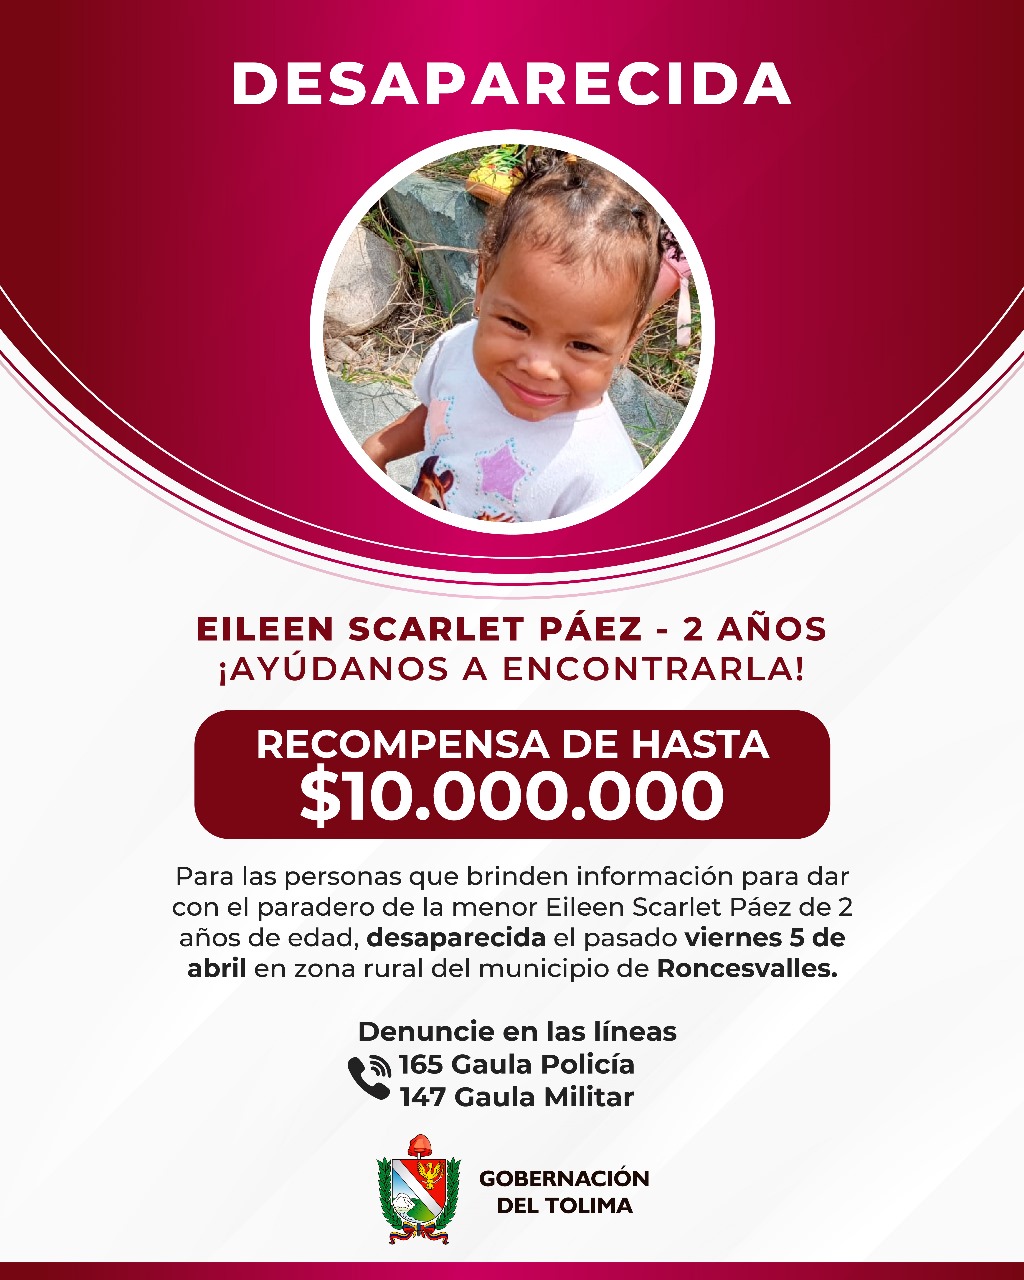 Gobernación del Tolima ofrece una recompensa de $10 millones por información que permita dar con el paradero de la niña desaparecida en Roncesvalles